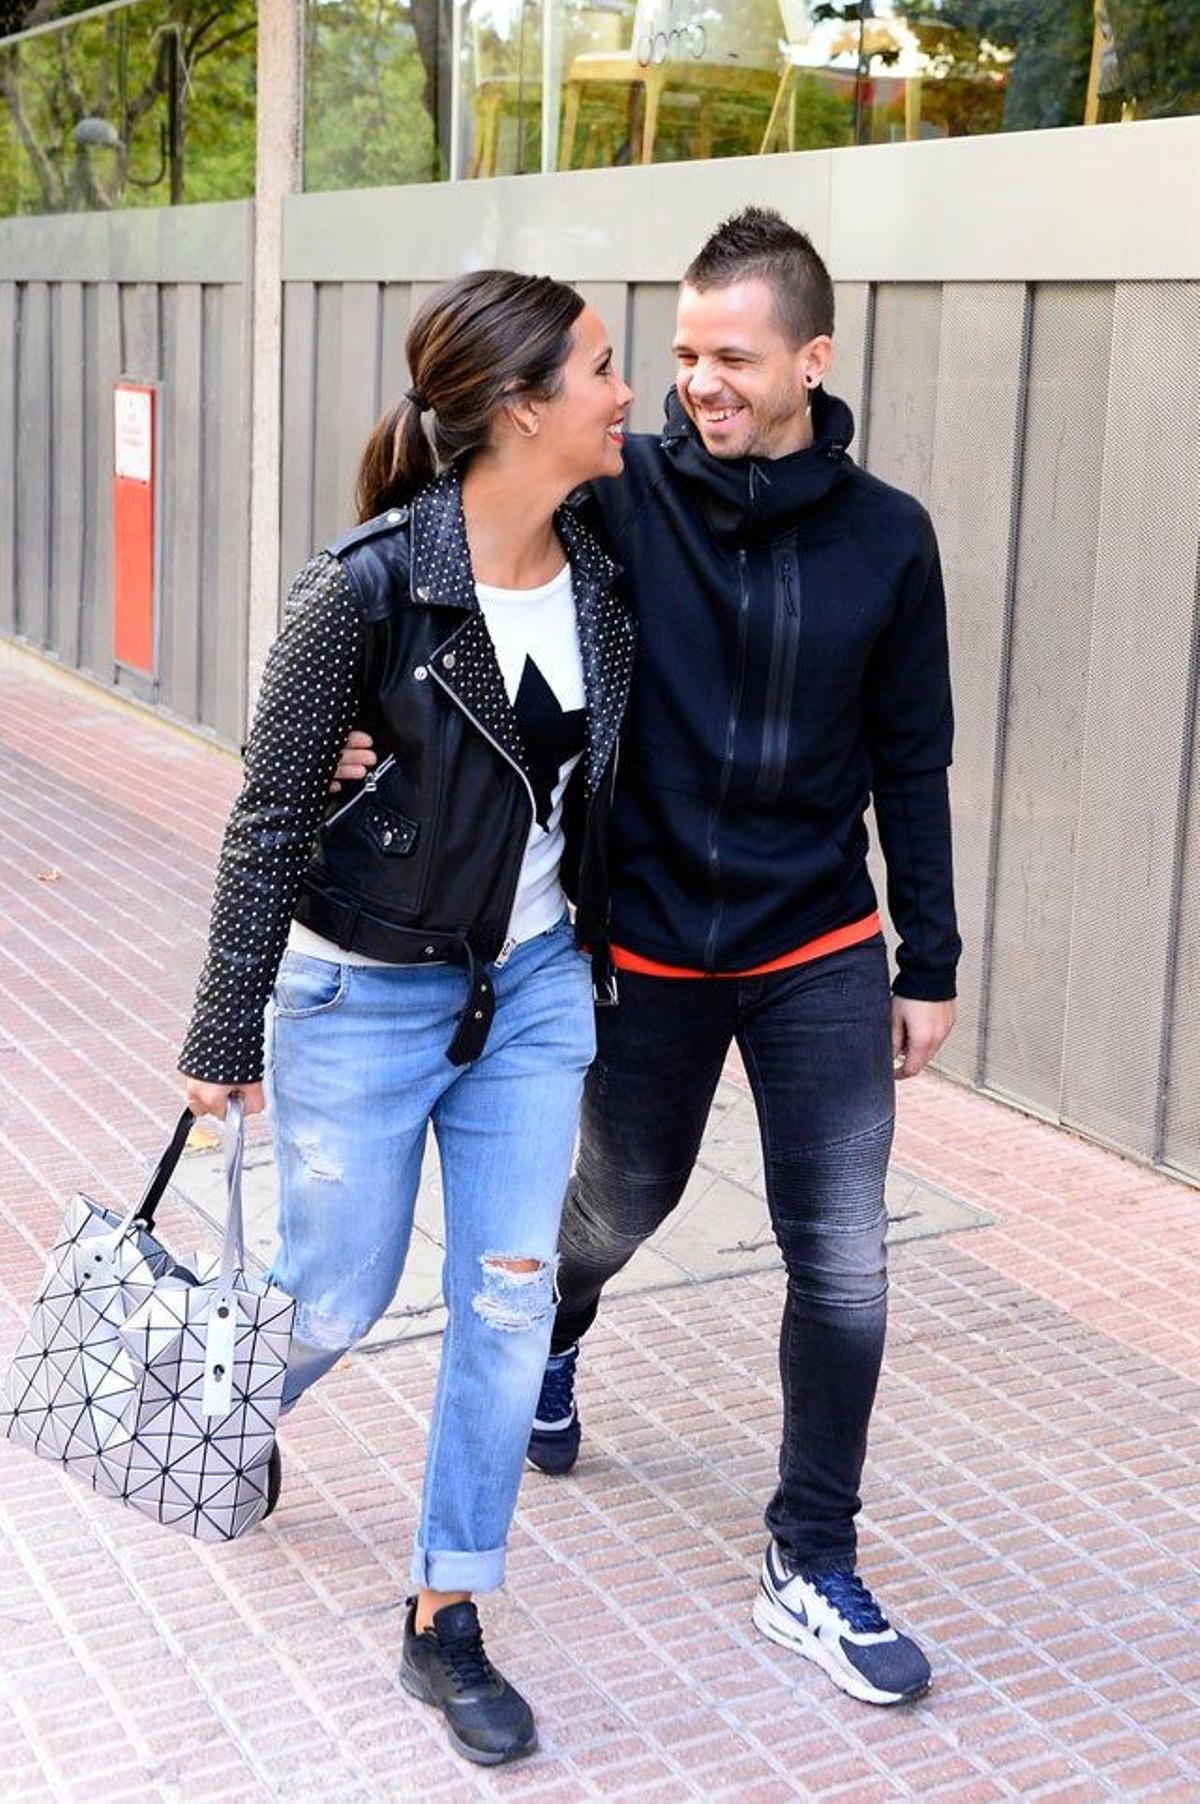 Cristina Pedroche y David Muñoz comparten una mirada cómplice mientras caminan por las calles de Madrid